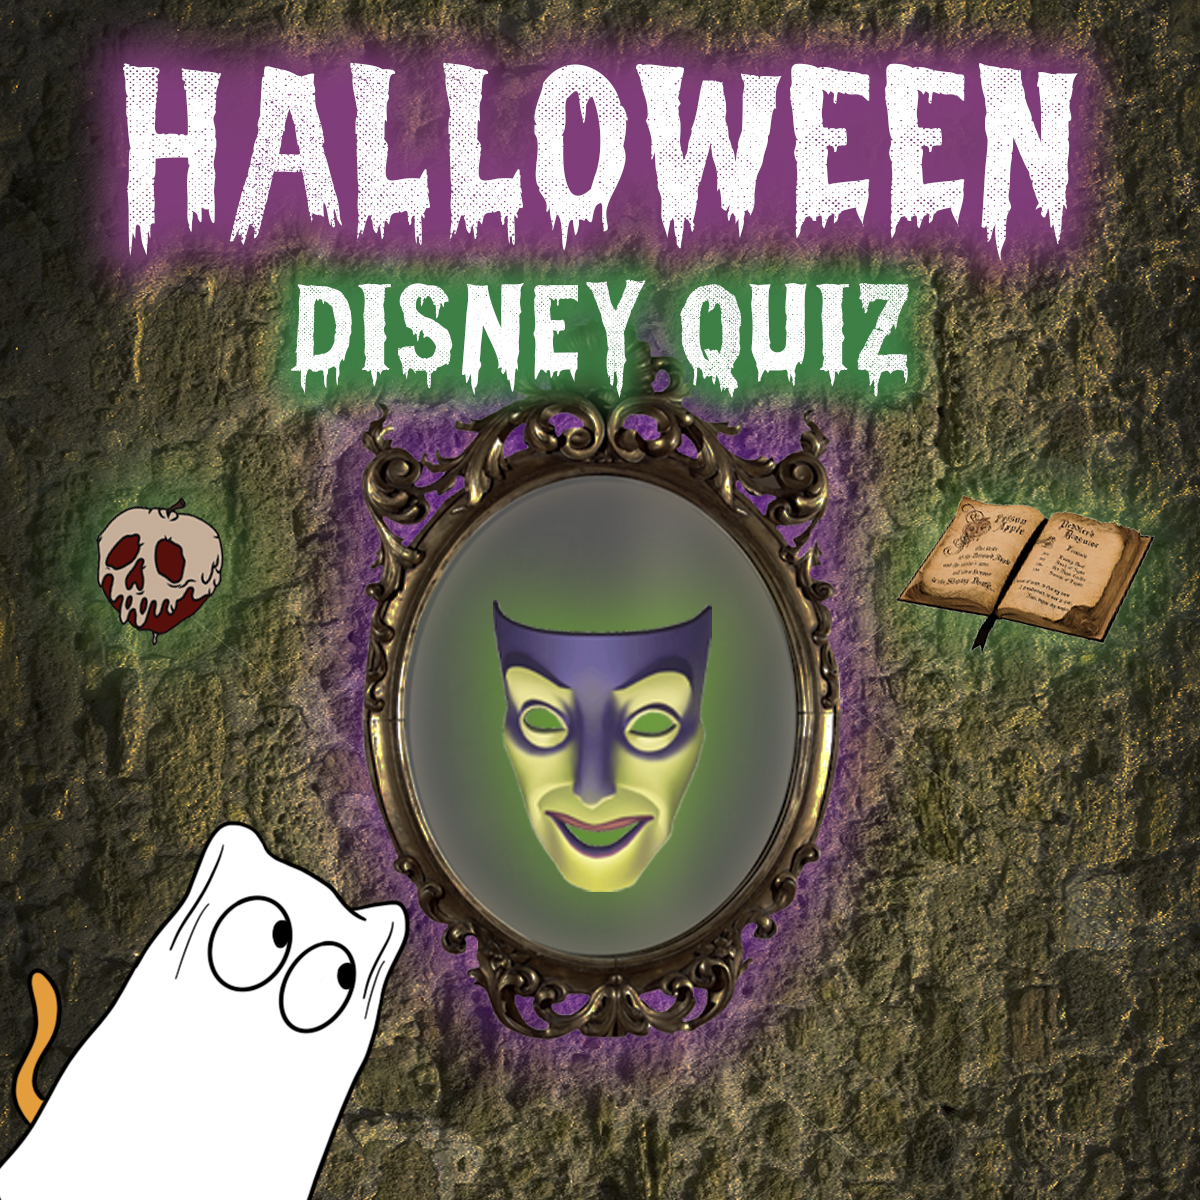 Disney HALLOWEEN quiz